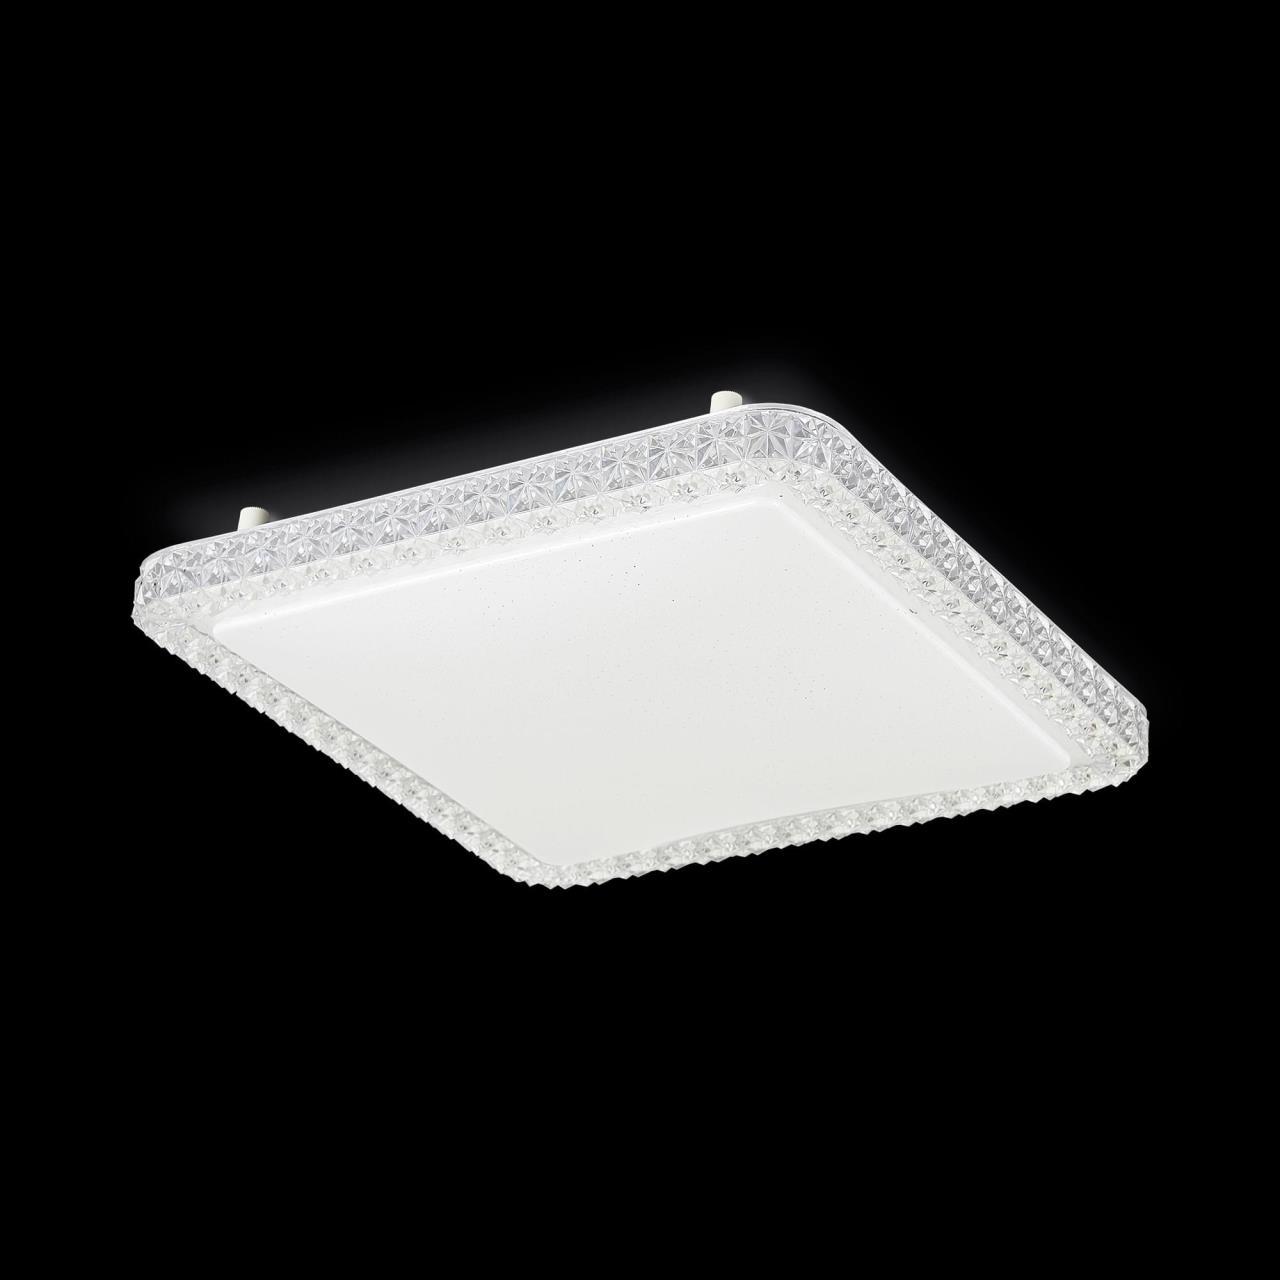 Потолочный светодиодный светильник Citilux Кристалино Слим CL715K360, LED 36W 3000K 2700lm, белый, металл, пластик - фото 3